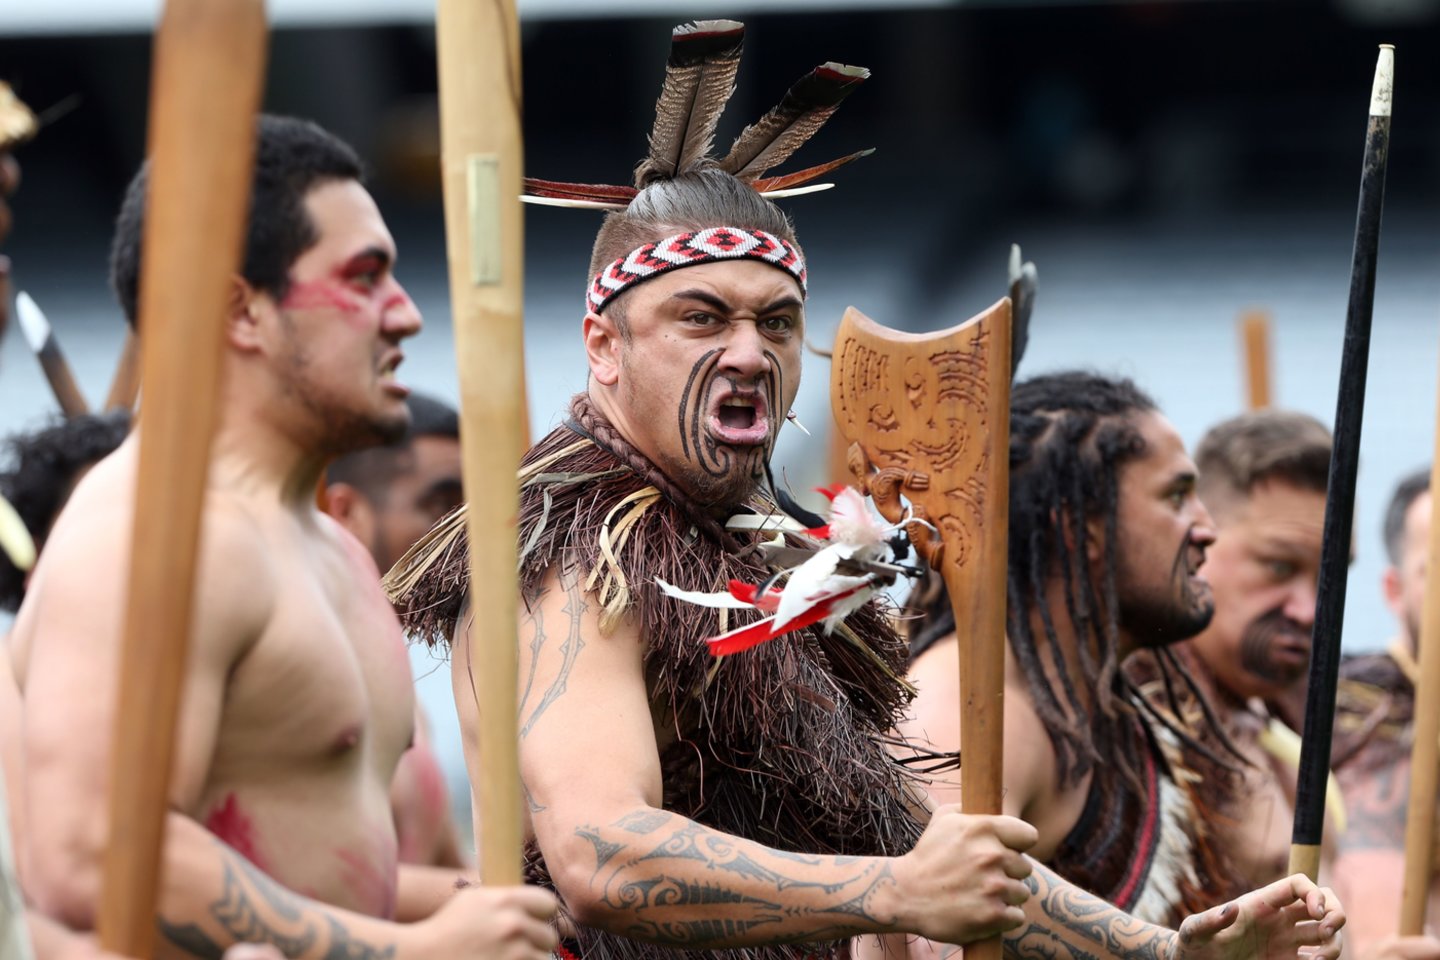 Maorių kultūra ir kalba Naujojoje Zelandijoje imamos vertinti vis labiau.<br>AFP/Scanpix nuotr.